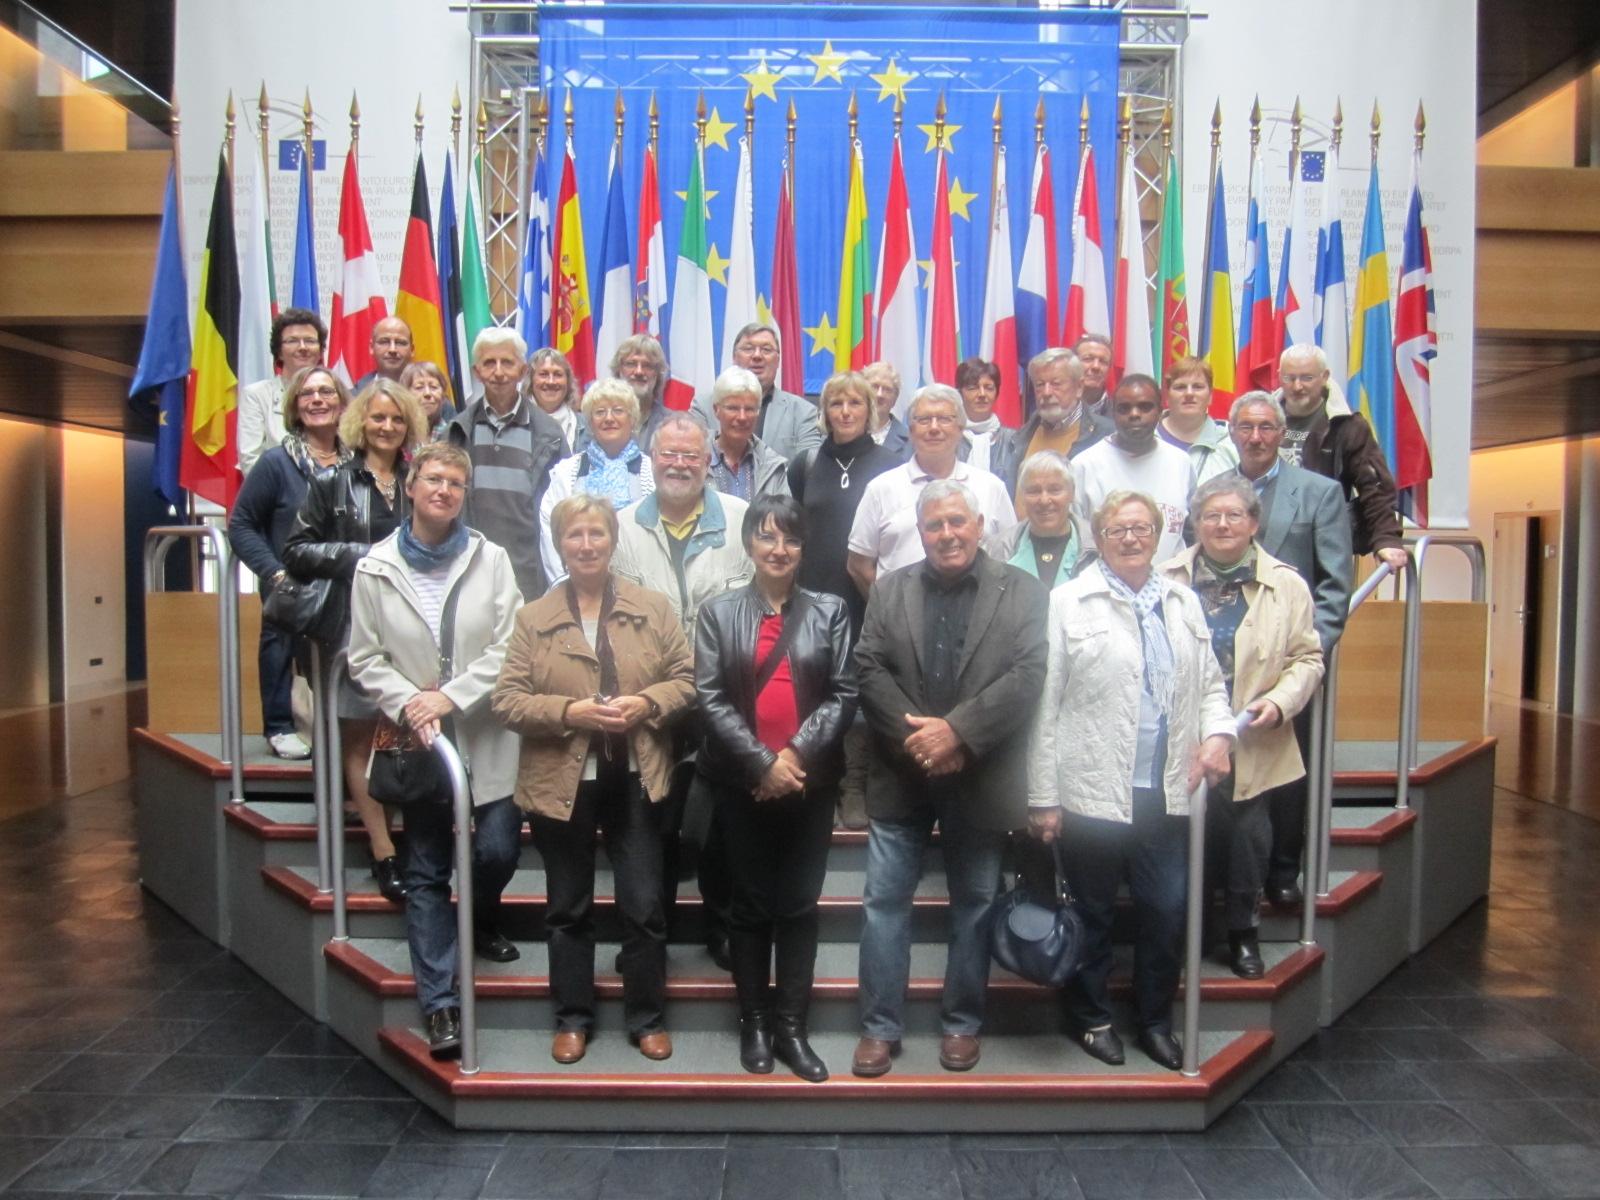 Gemeinsam nahmen die "Lillerois" und die Marsberger an einer zweisprachigen Führung durch das Europaparlament teil und bekamen somit einen interessanten Eindruck des pol. Geschehens in Straßburg.